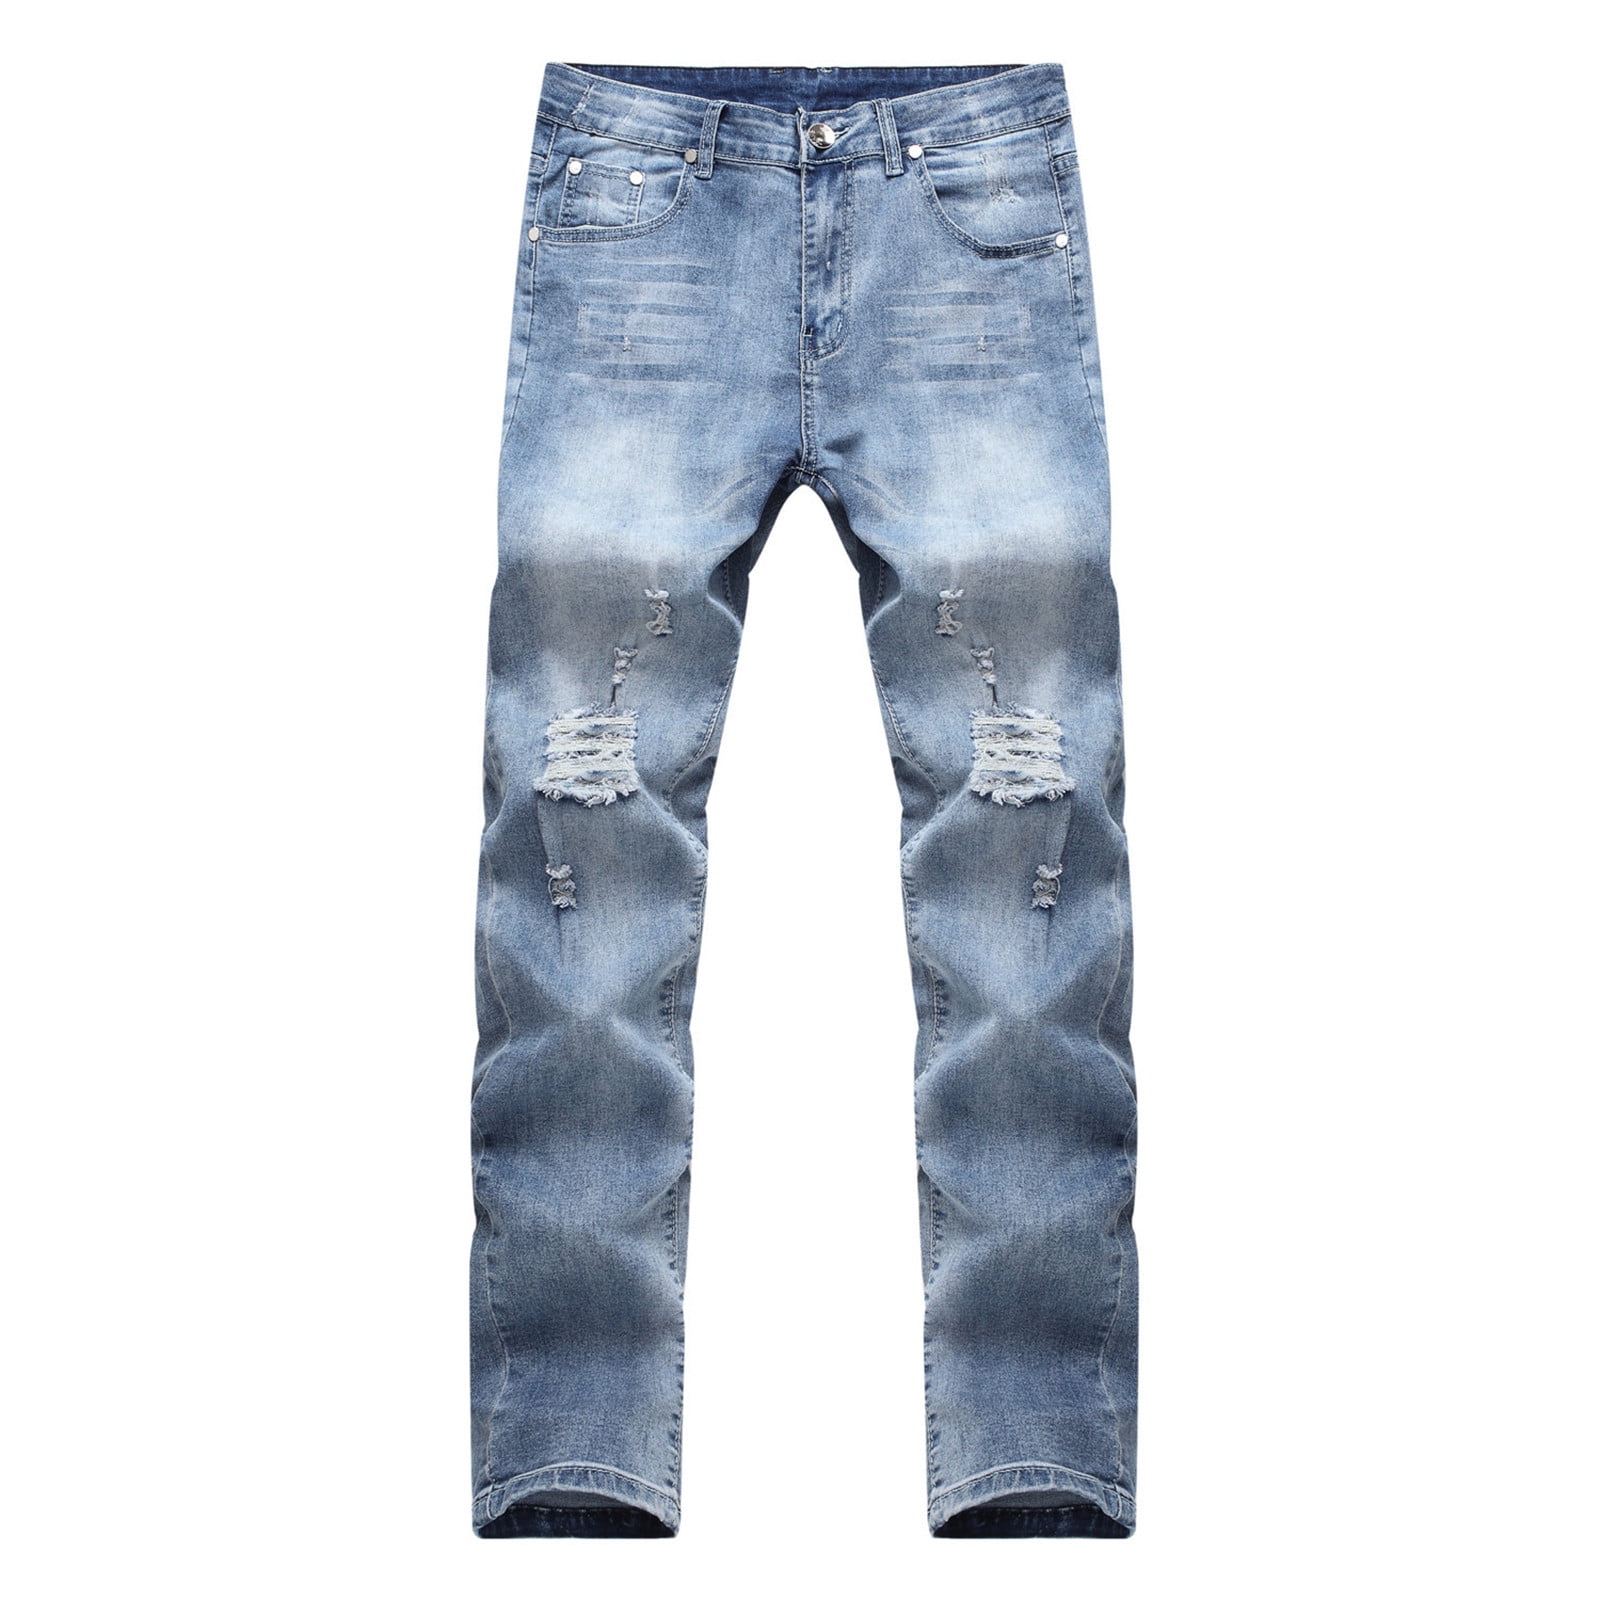 Biker Jeans for Men Slim Fit, Men's Comfy Stretch Ripped Distressed Biker  Jeans Pants Rock Revival, Designer Jeans